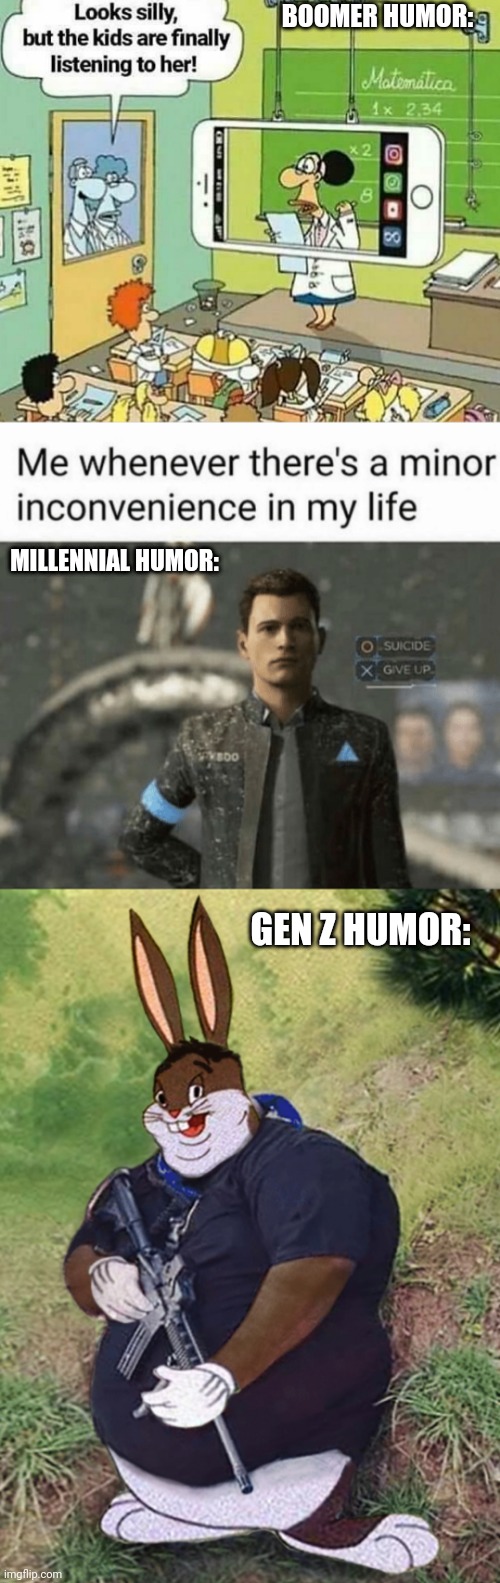 Generations humors | BOOMER HUMOR:; MILLENNIAL HUMOR:; GEN Z HUMOR: | image tagged in gen z,boomer,millennials | made w/ Imgflip meme maker